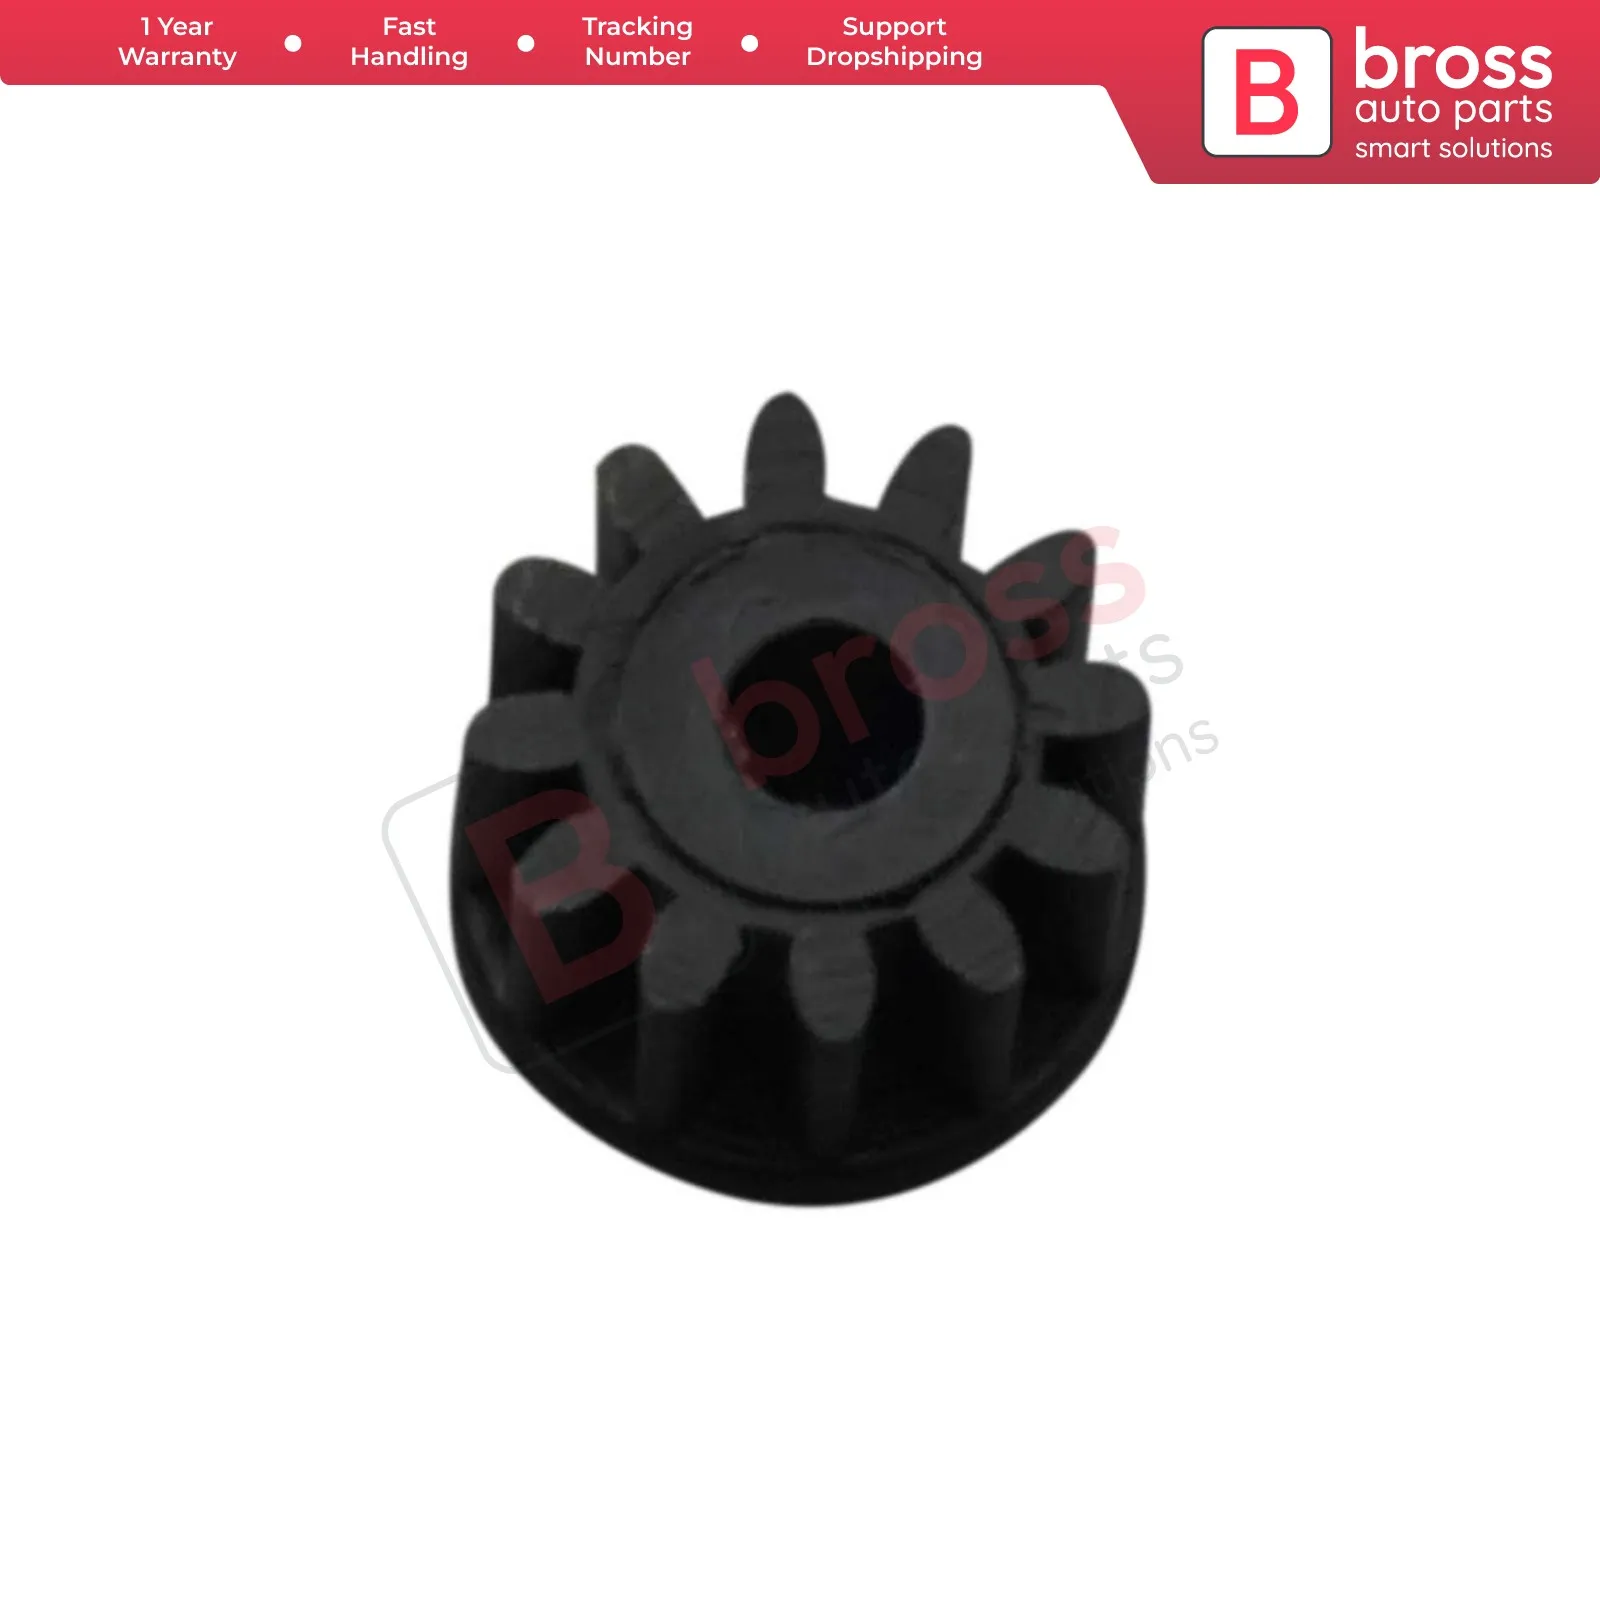 Bross Auto Parts V1BGE512  Speedometer Cluster Tacho E1 12-Tooth Odometer Gear For BMW E28 E24 E30 Made in Turkey